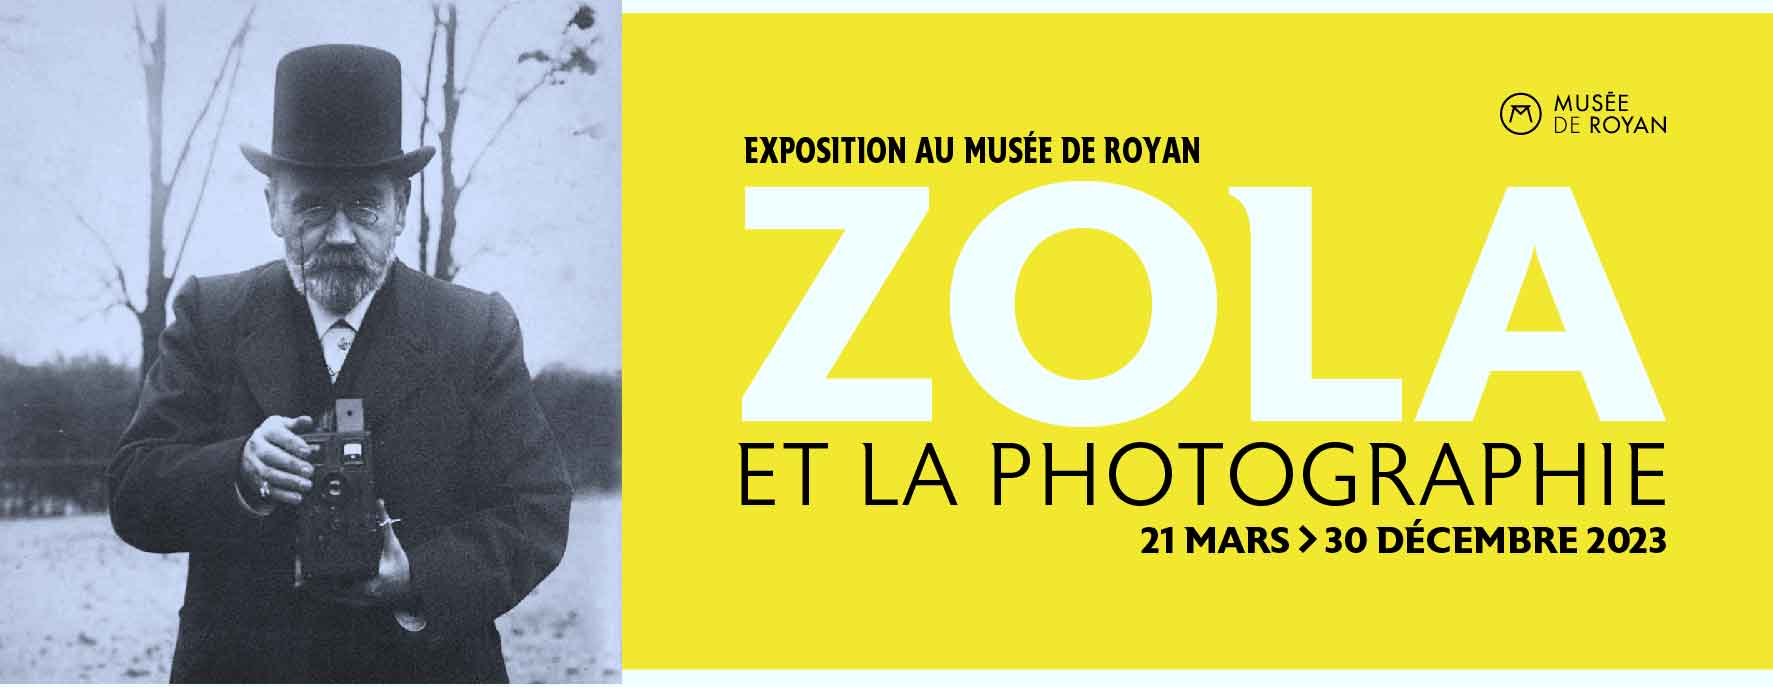 exposition Zola